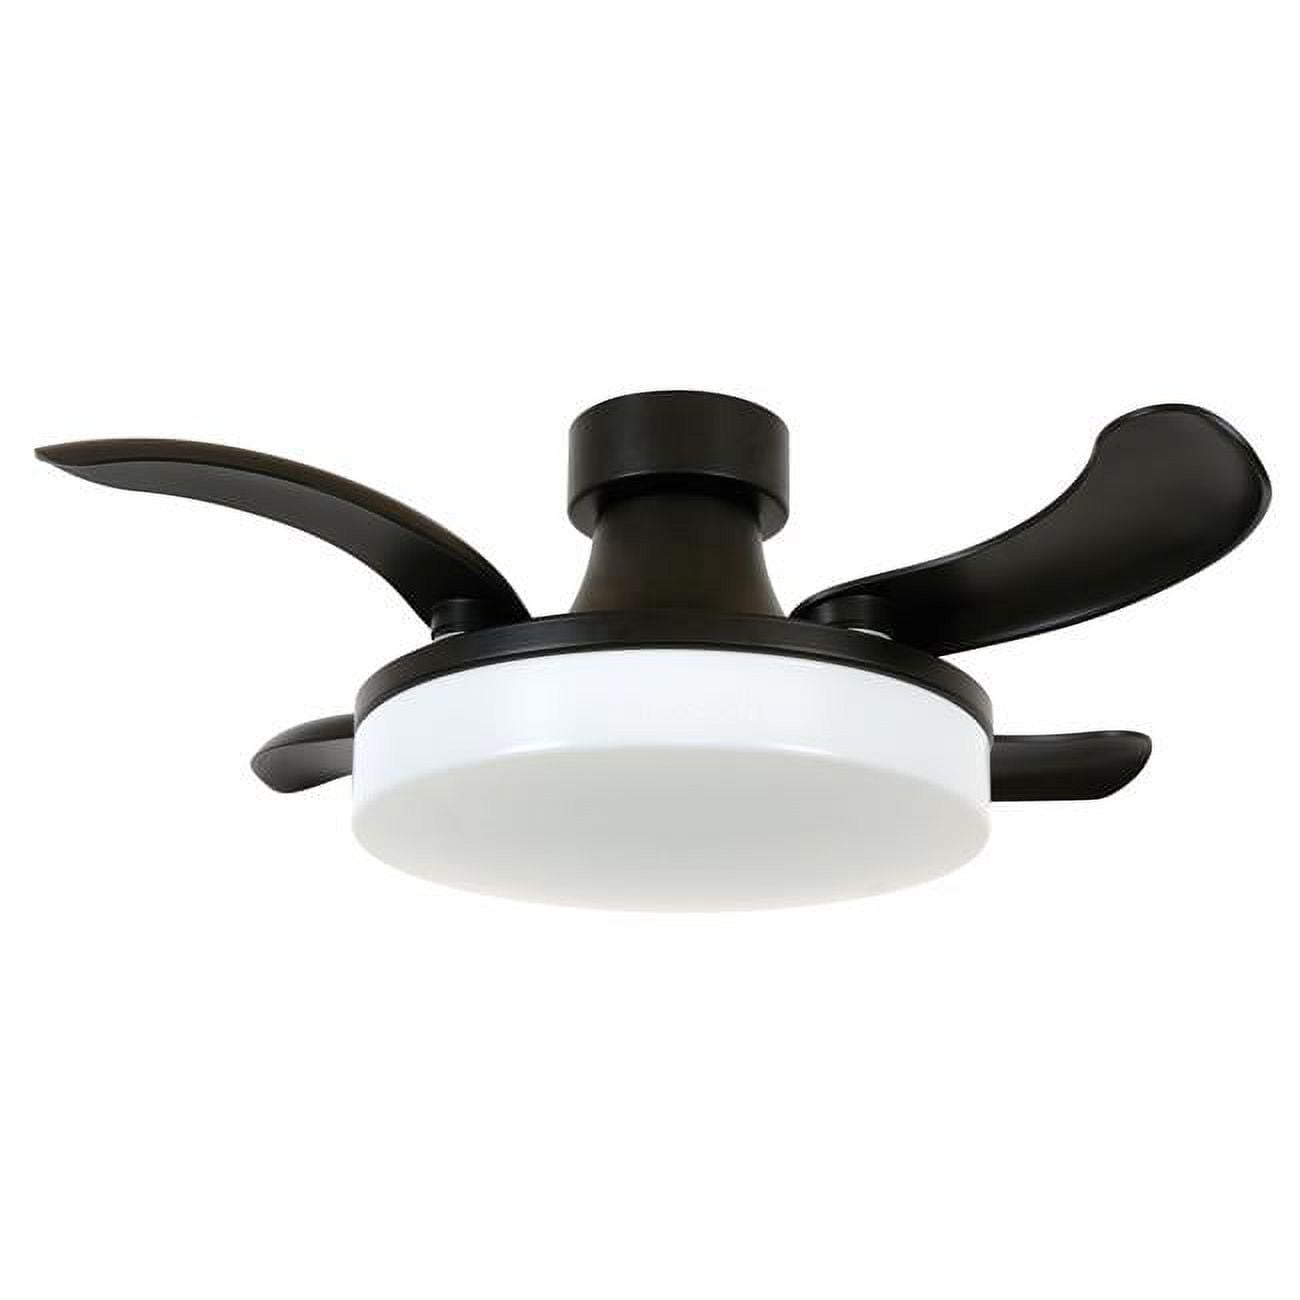 Picture of Fanaway 21066501 Fanaway Orbit 36-inch Matte Black Ceiling Fan with Light